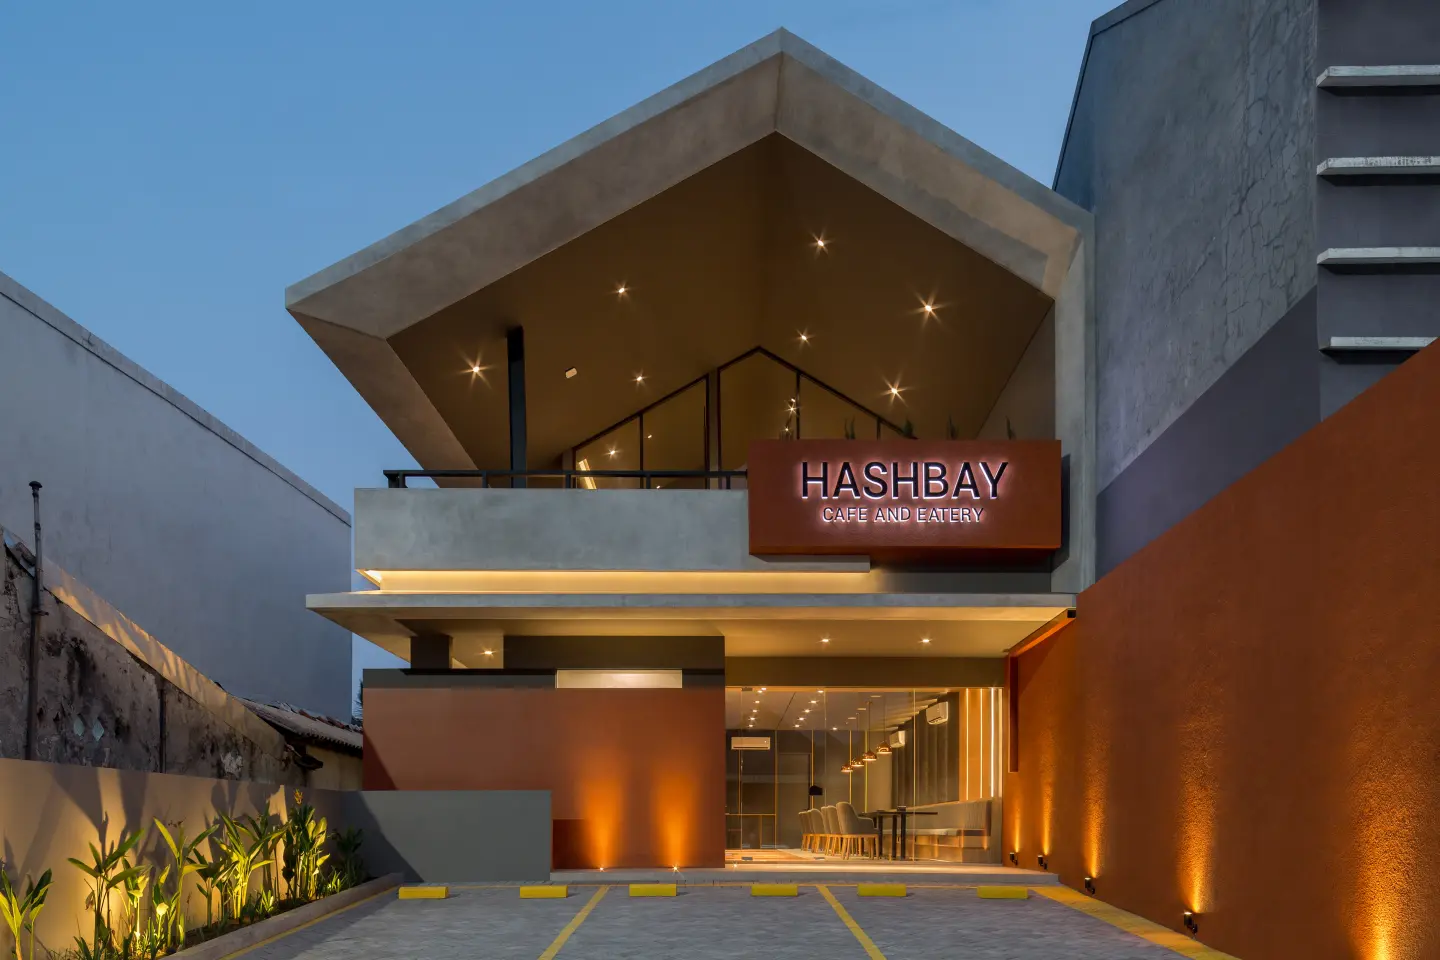 Hashbay Cafe